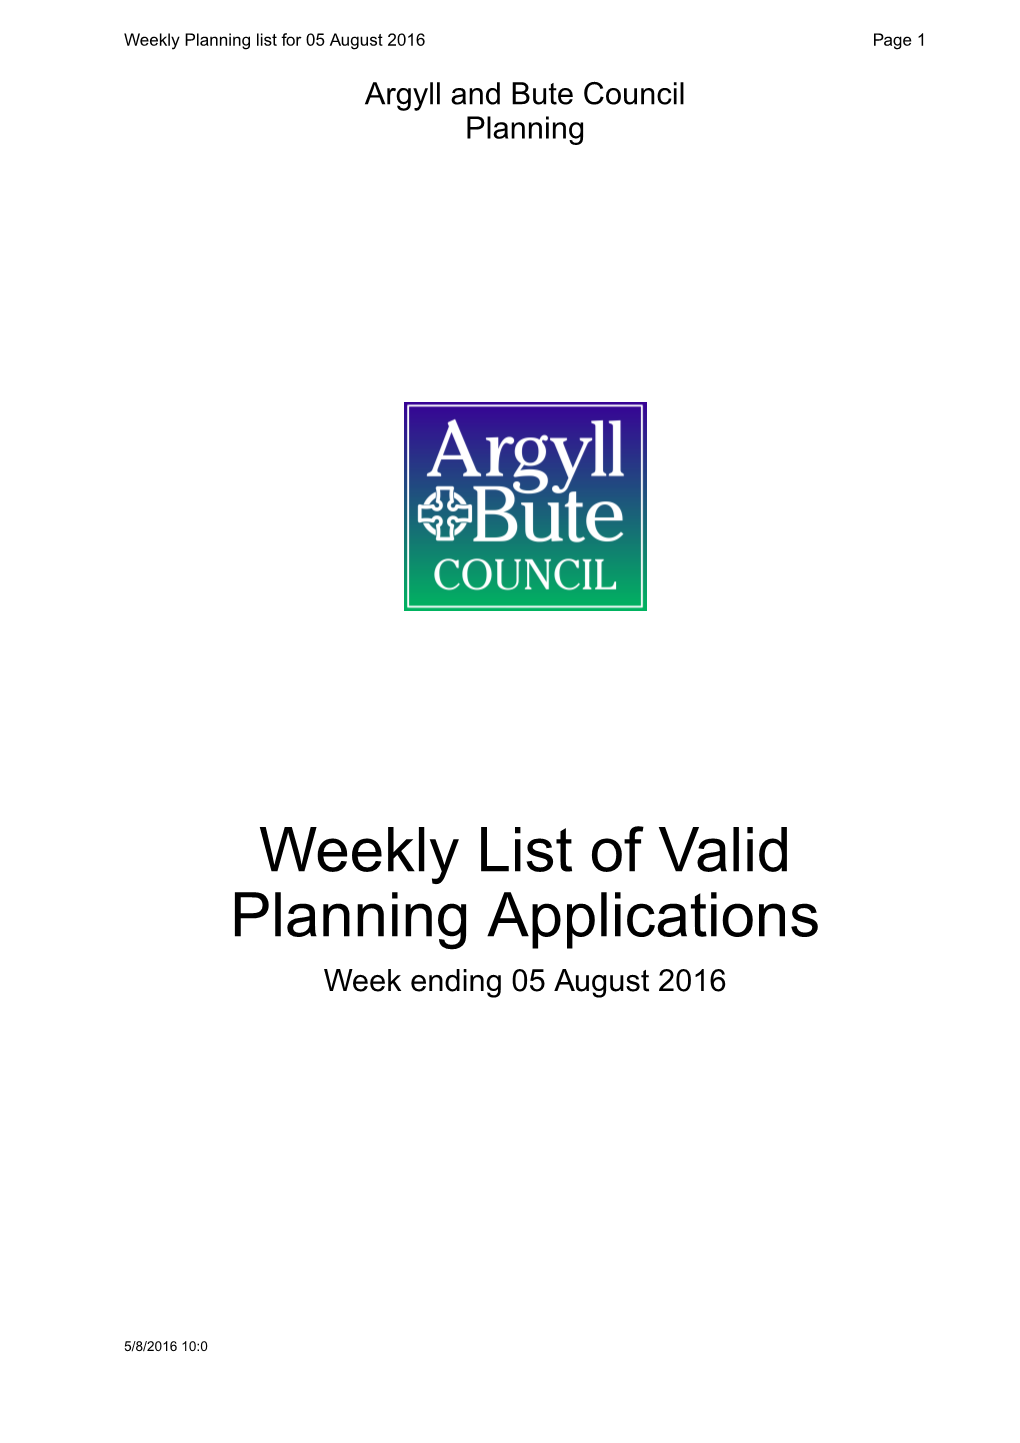 Weekly List of Valid Planning Applications Week Ending 05 August 2016